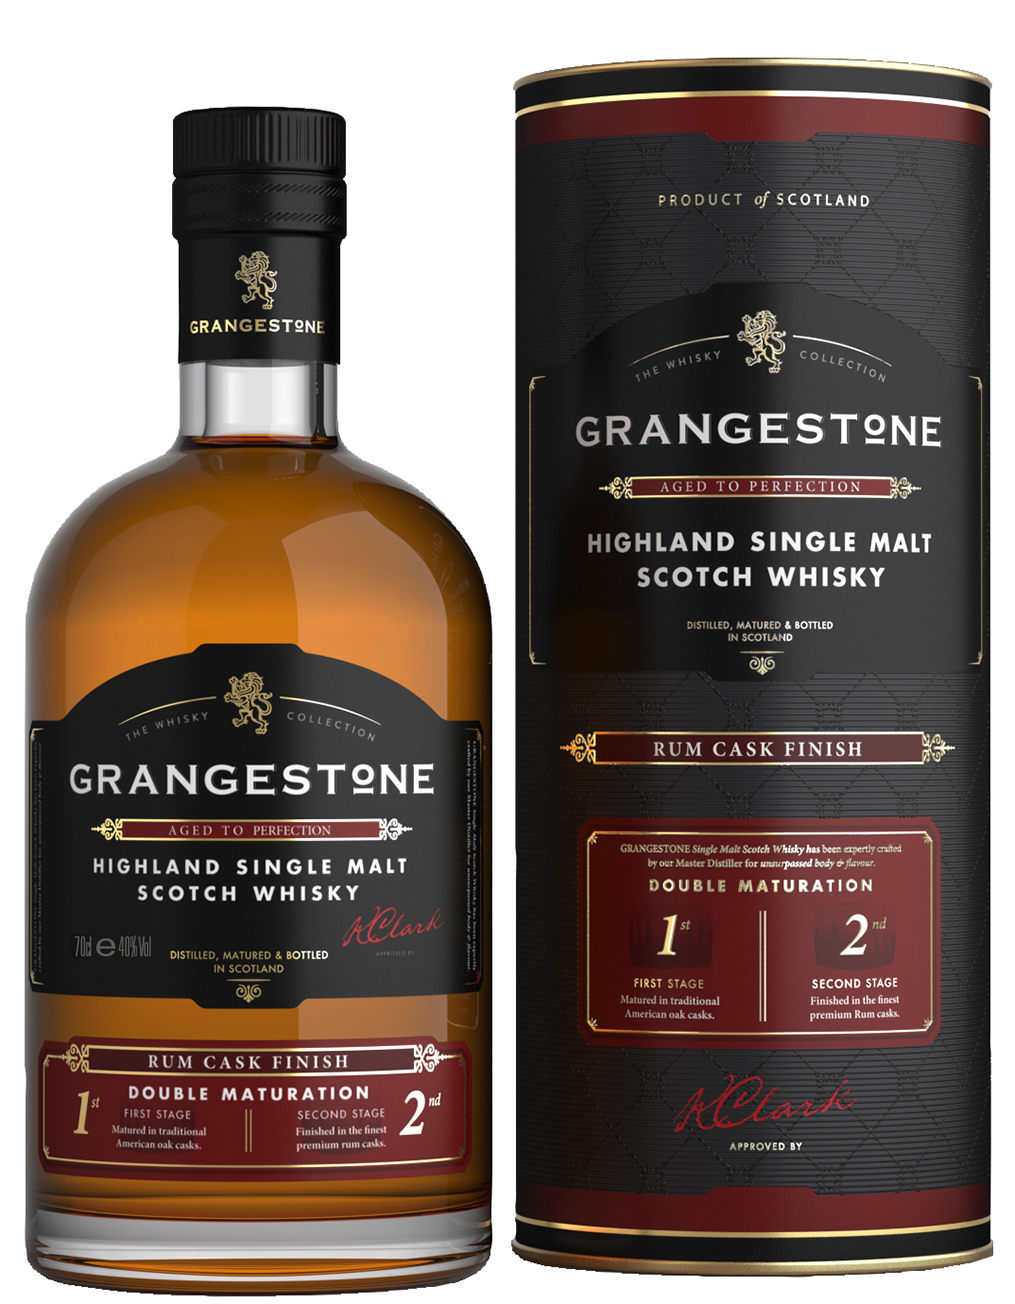 The Glenlivet The Grangestone Highland Rum Cask Finish Single Malt